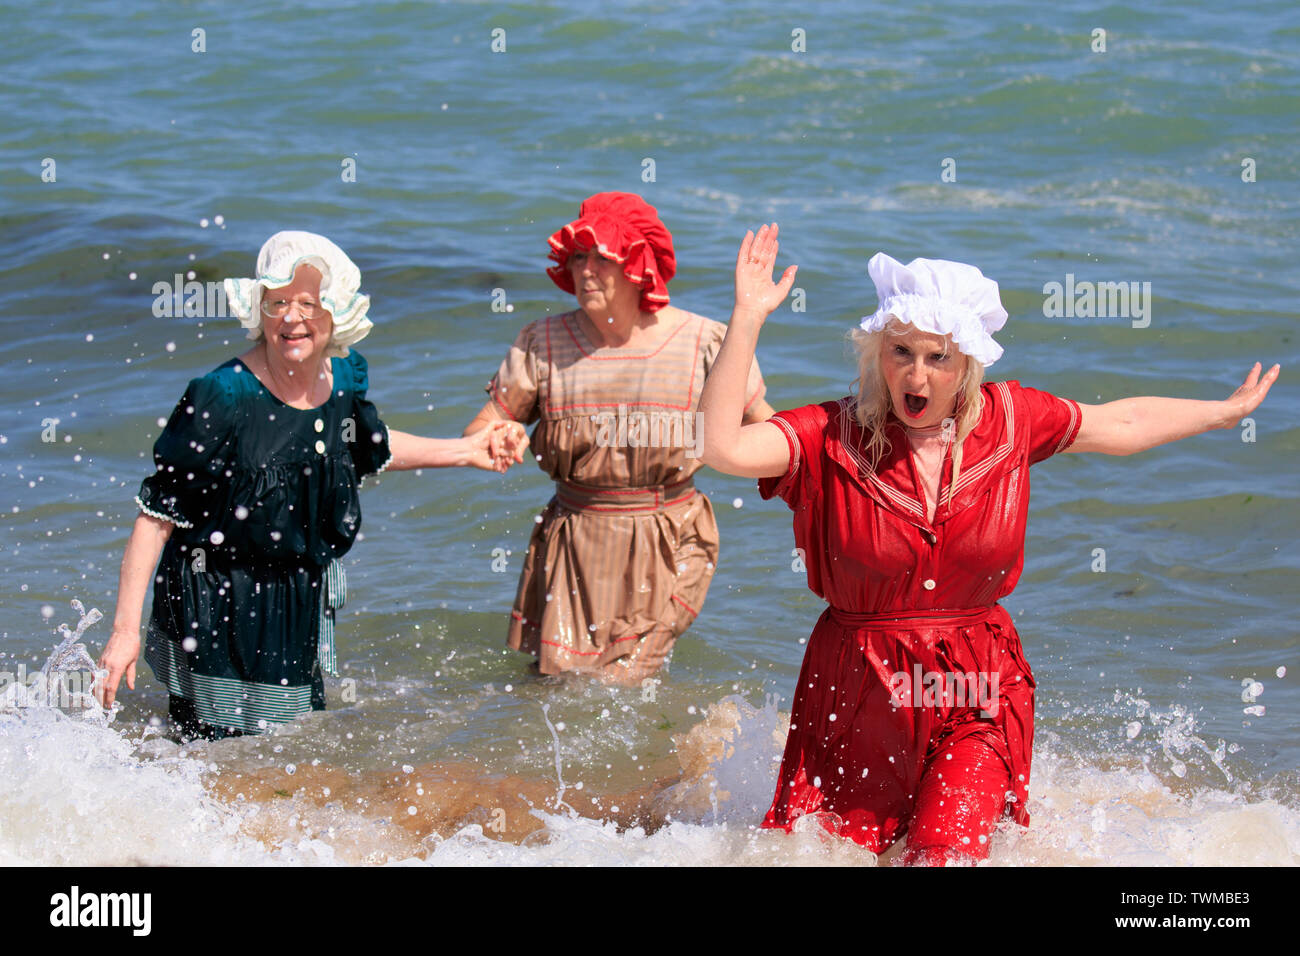 instante detective Oculto Broadstairs anual Festival Dickens. La playa Tea Party, tres mujeres mayores  remando en las olas en la orilla del mar en la época victoriana en trajes  de baño Fotografía de stock -